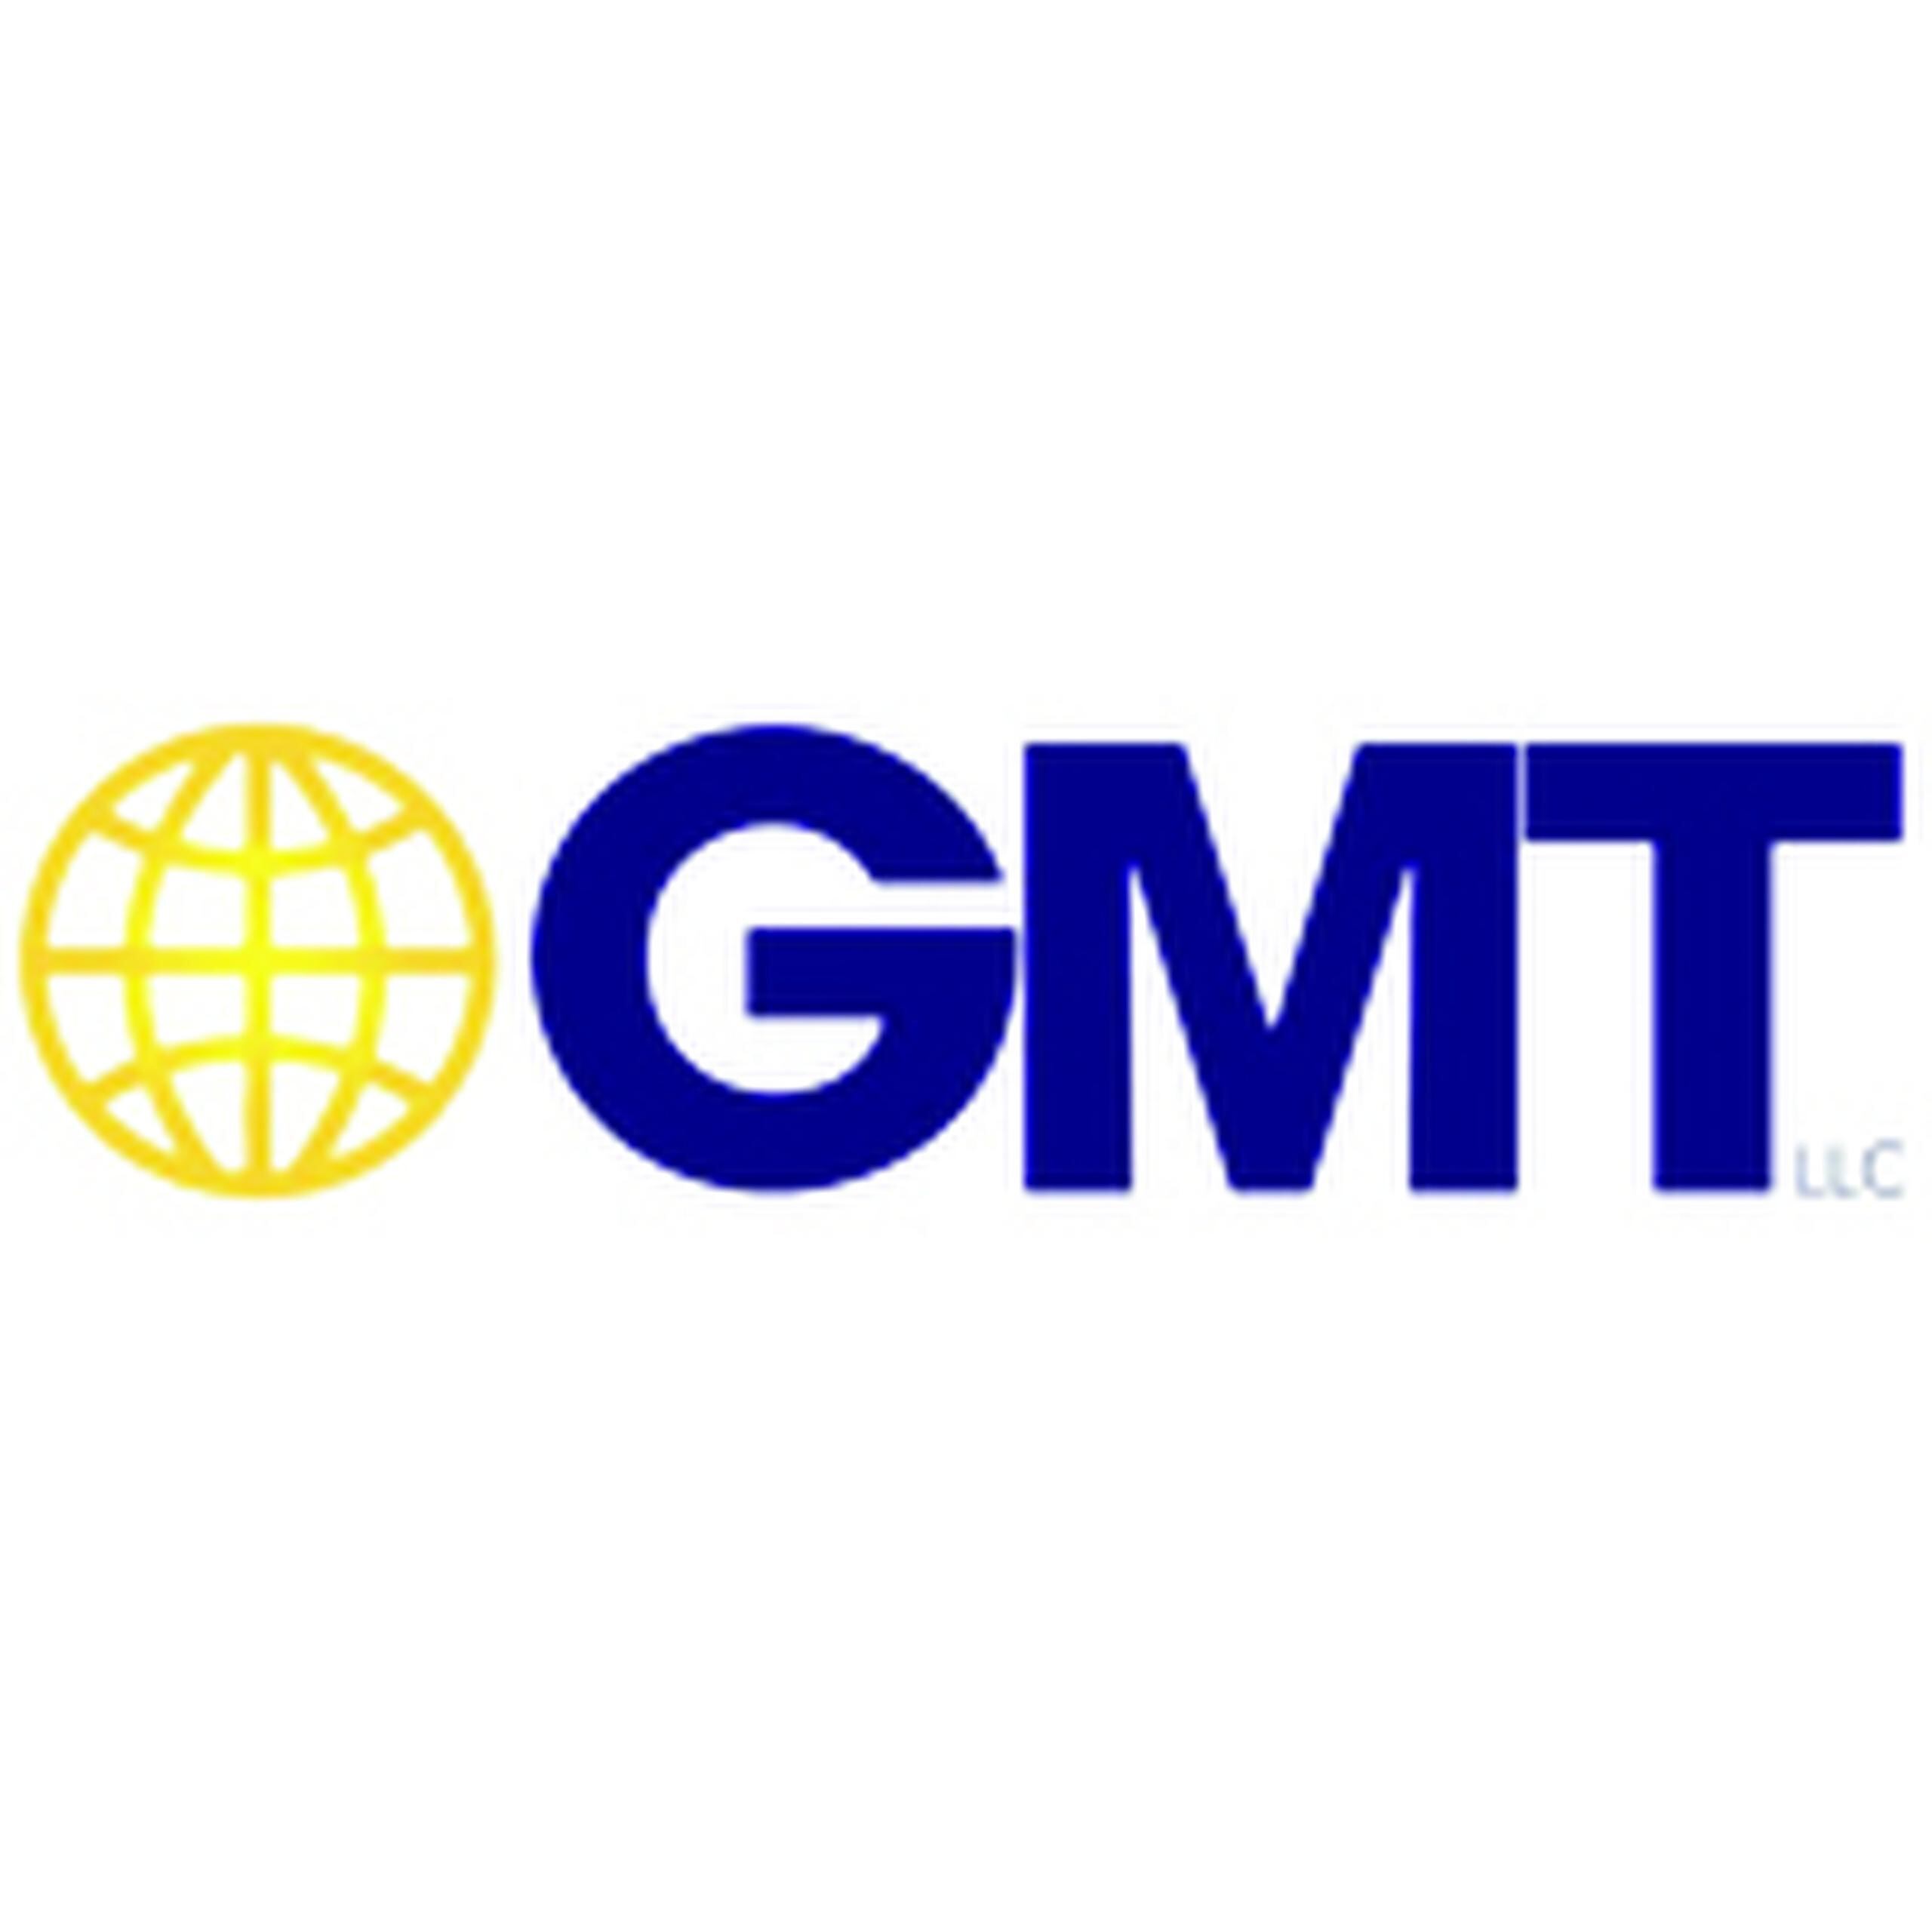 GMT tiene más de 300 empleados que manejan más de 150 marcas, algunas de estas líderes en sus segmentos.